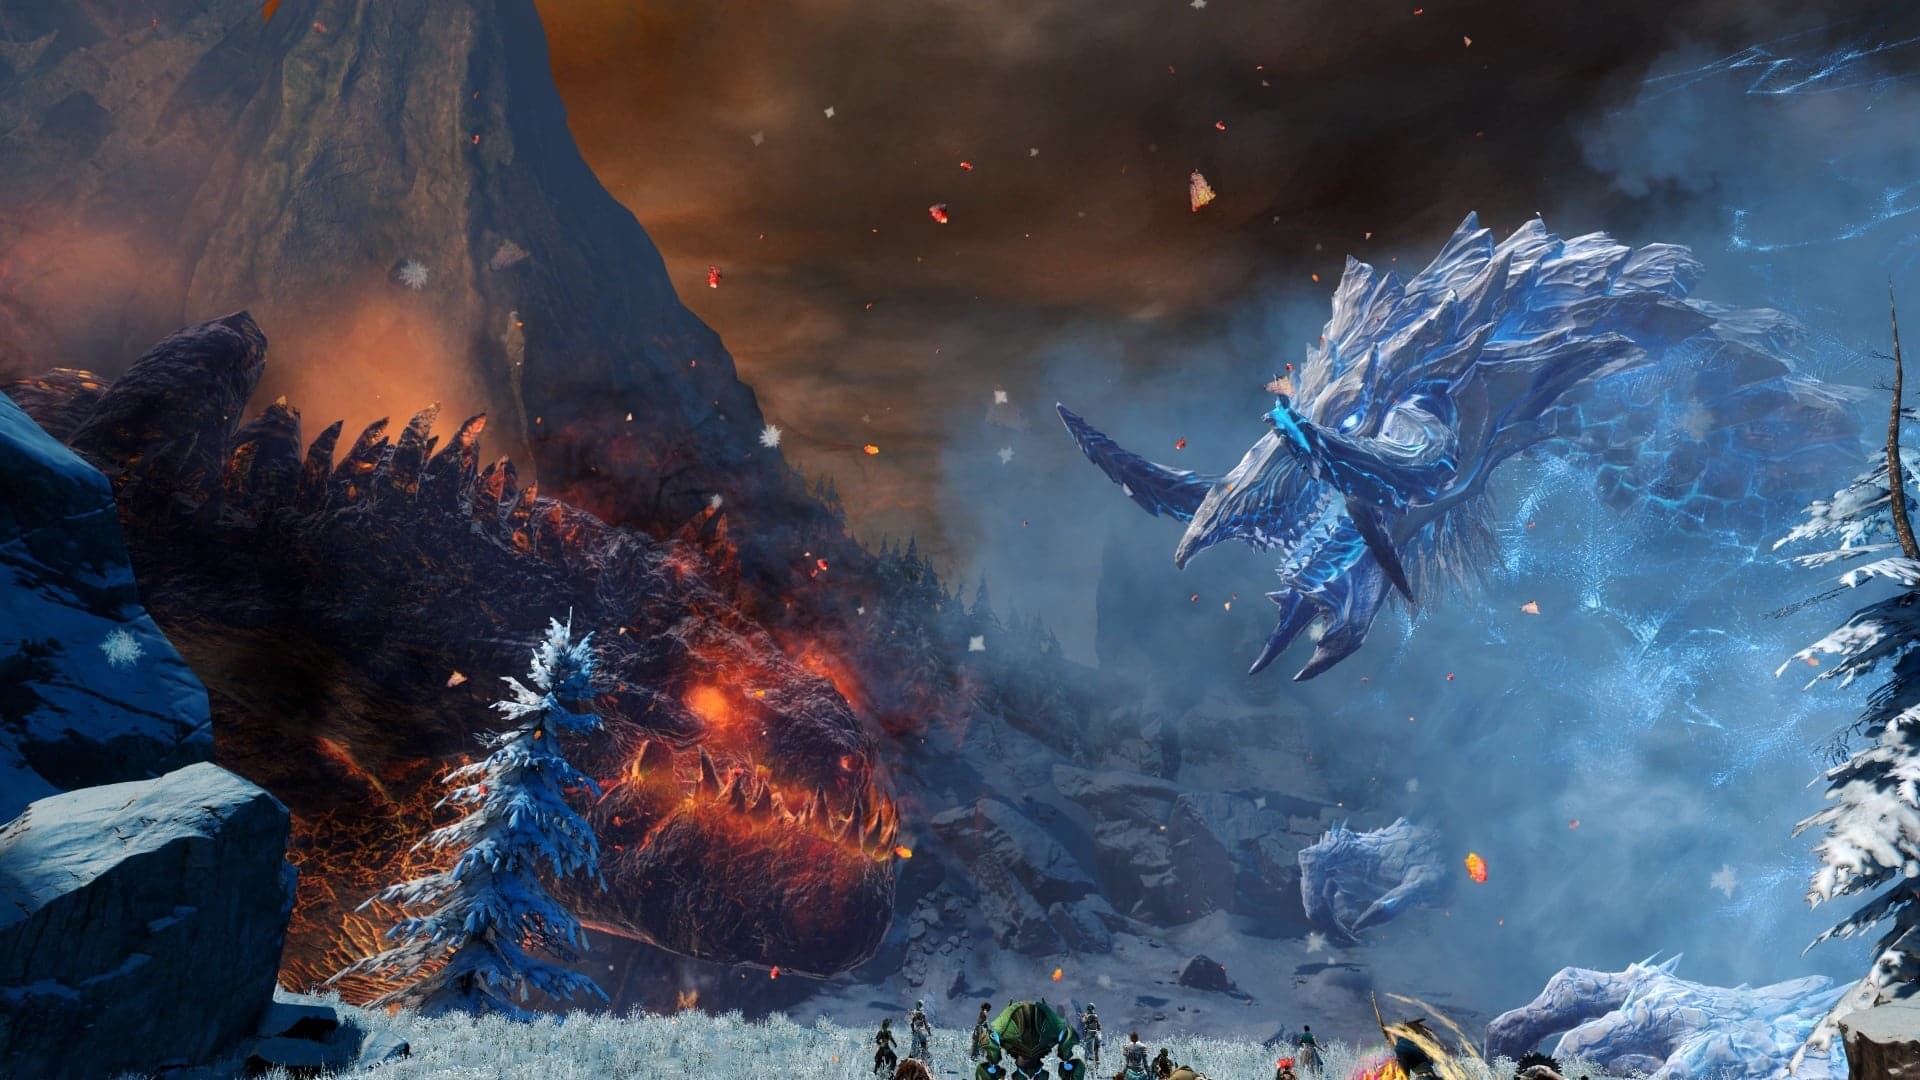 В основной истории игры вы освободите мир от угрозы гигантских драконов.